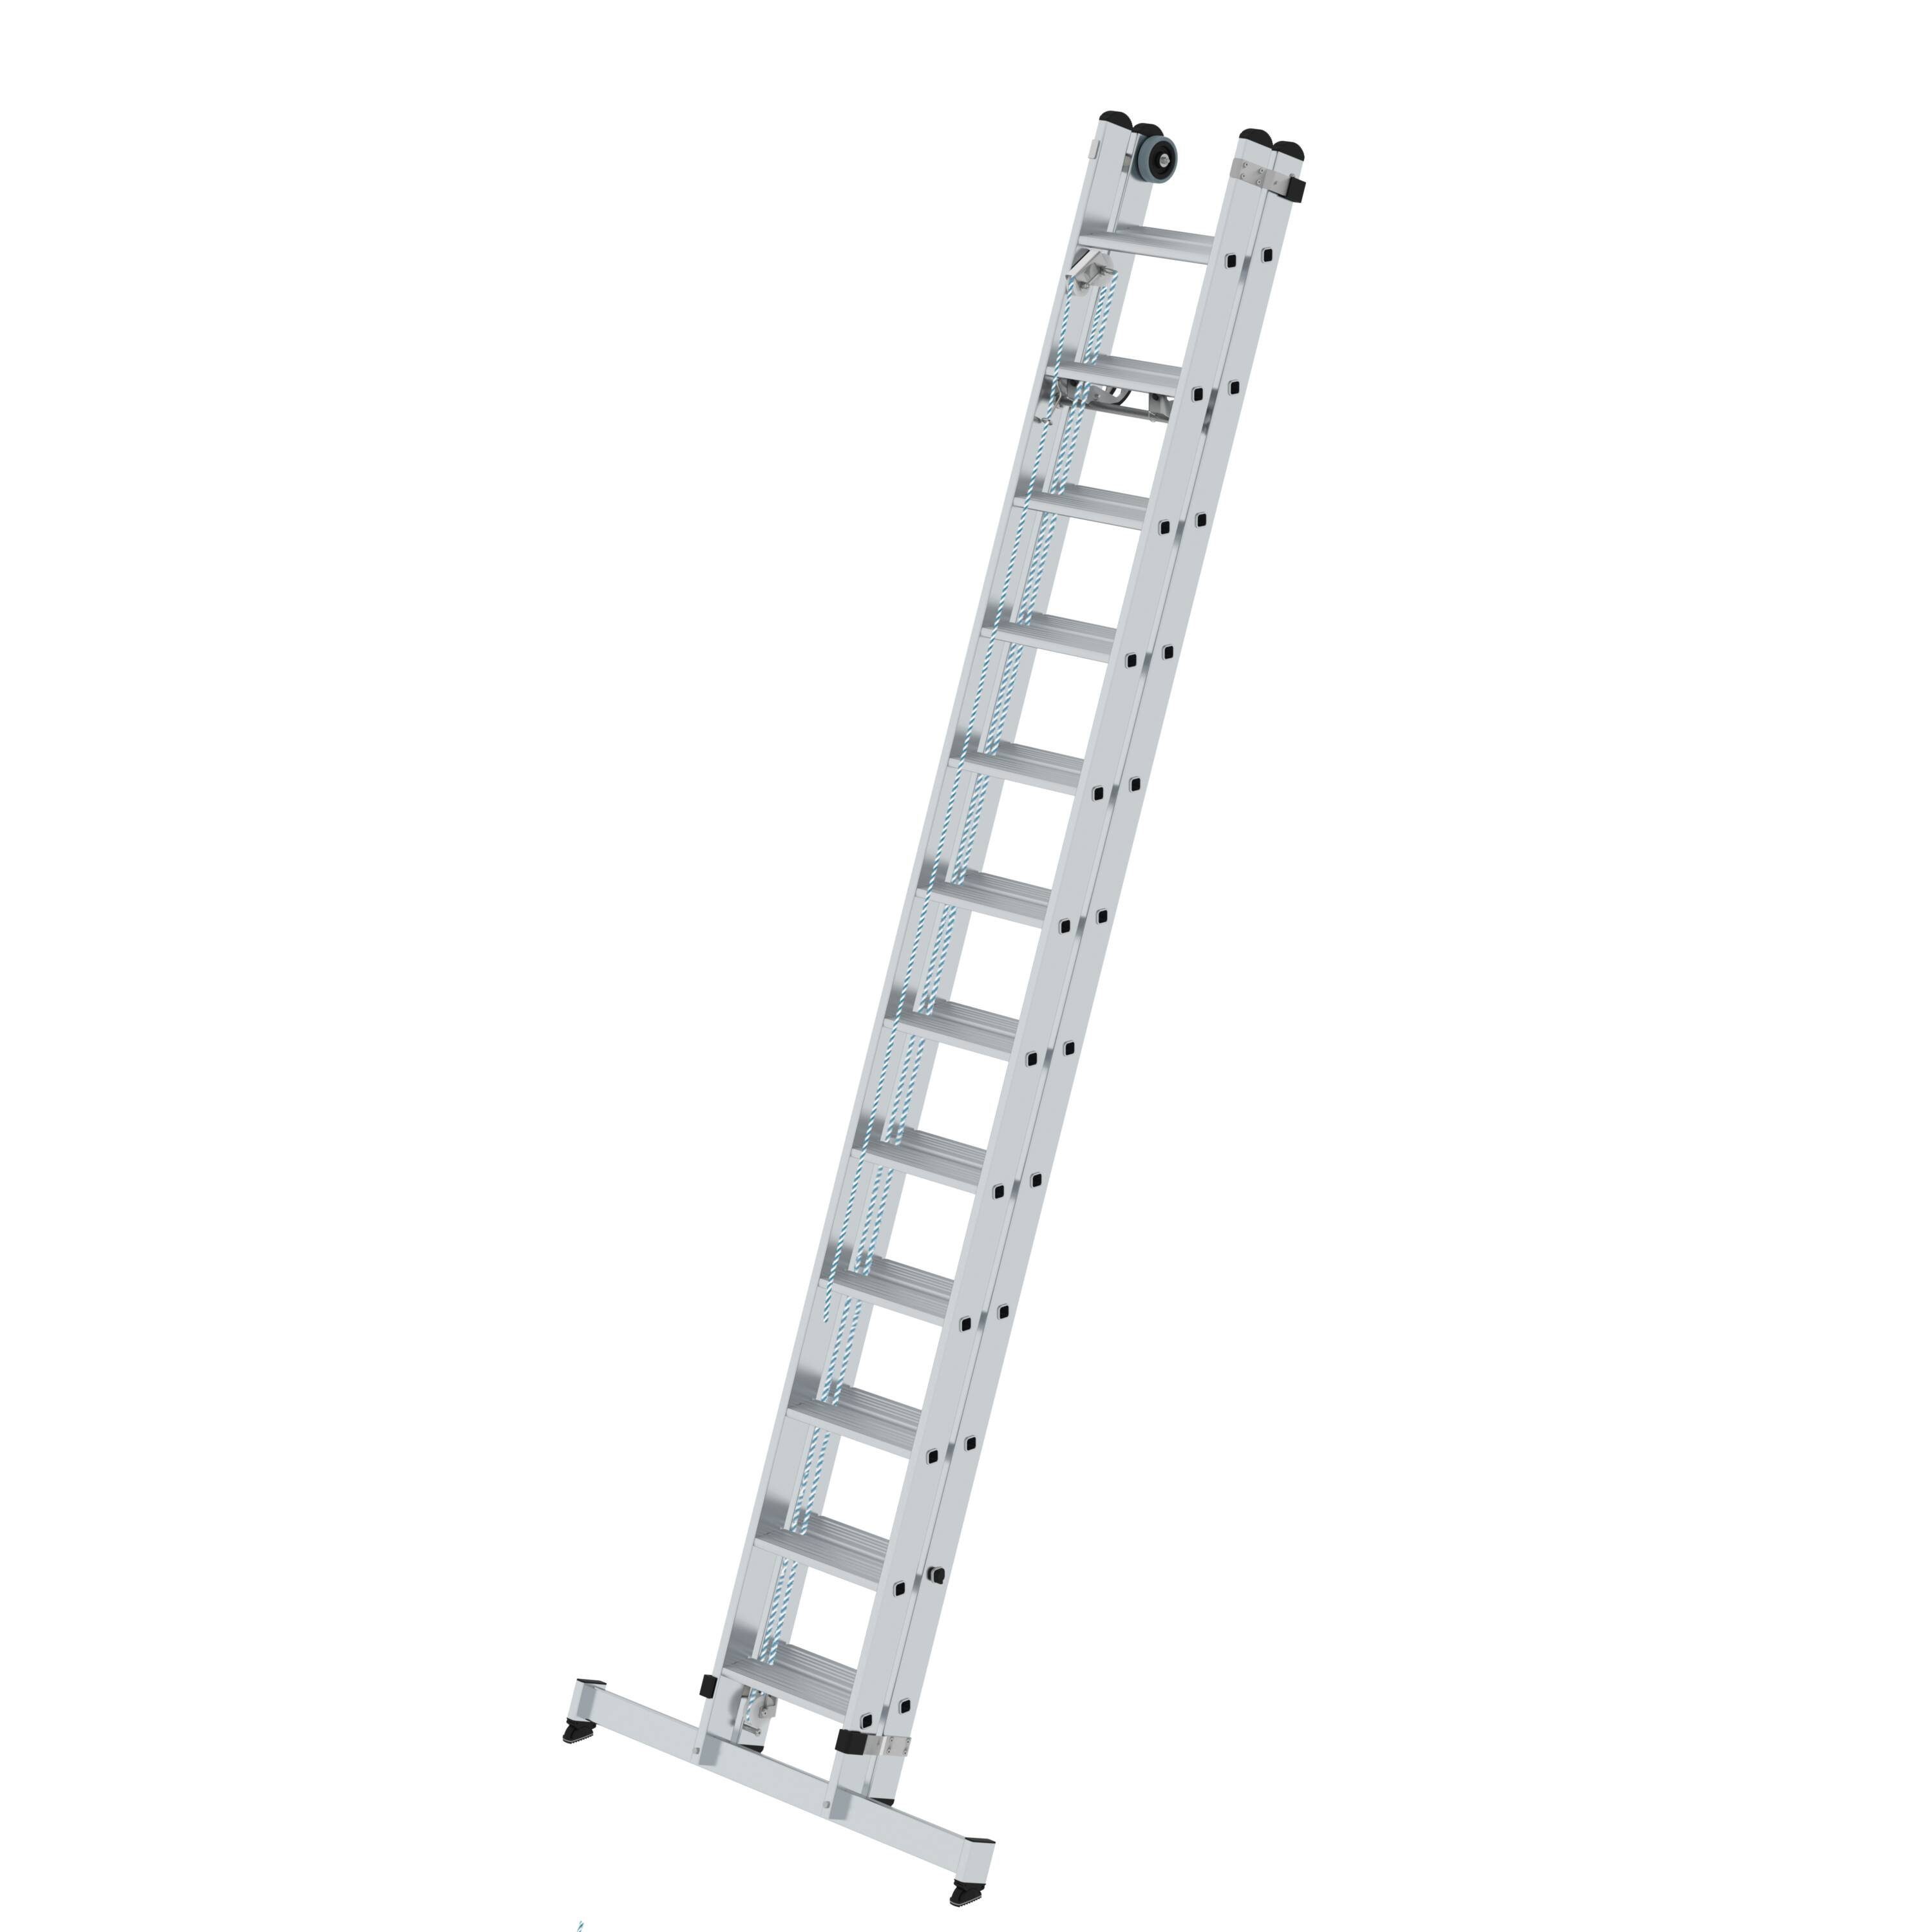 PROREGAL® Schiebeleiter Stufen-Seilzugleiter 2-teilig nivello® Traverse mit Stufen 2x12